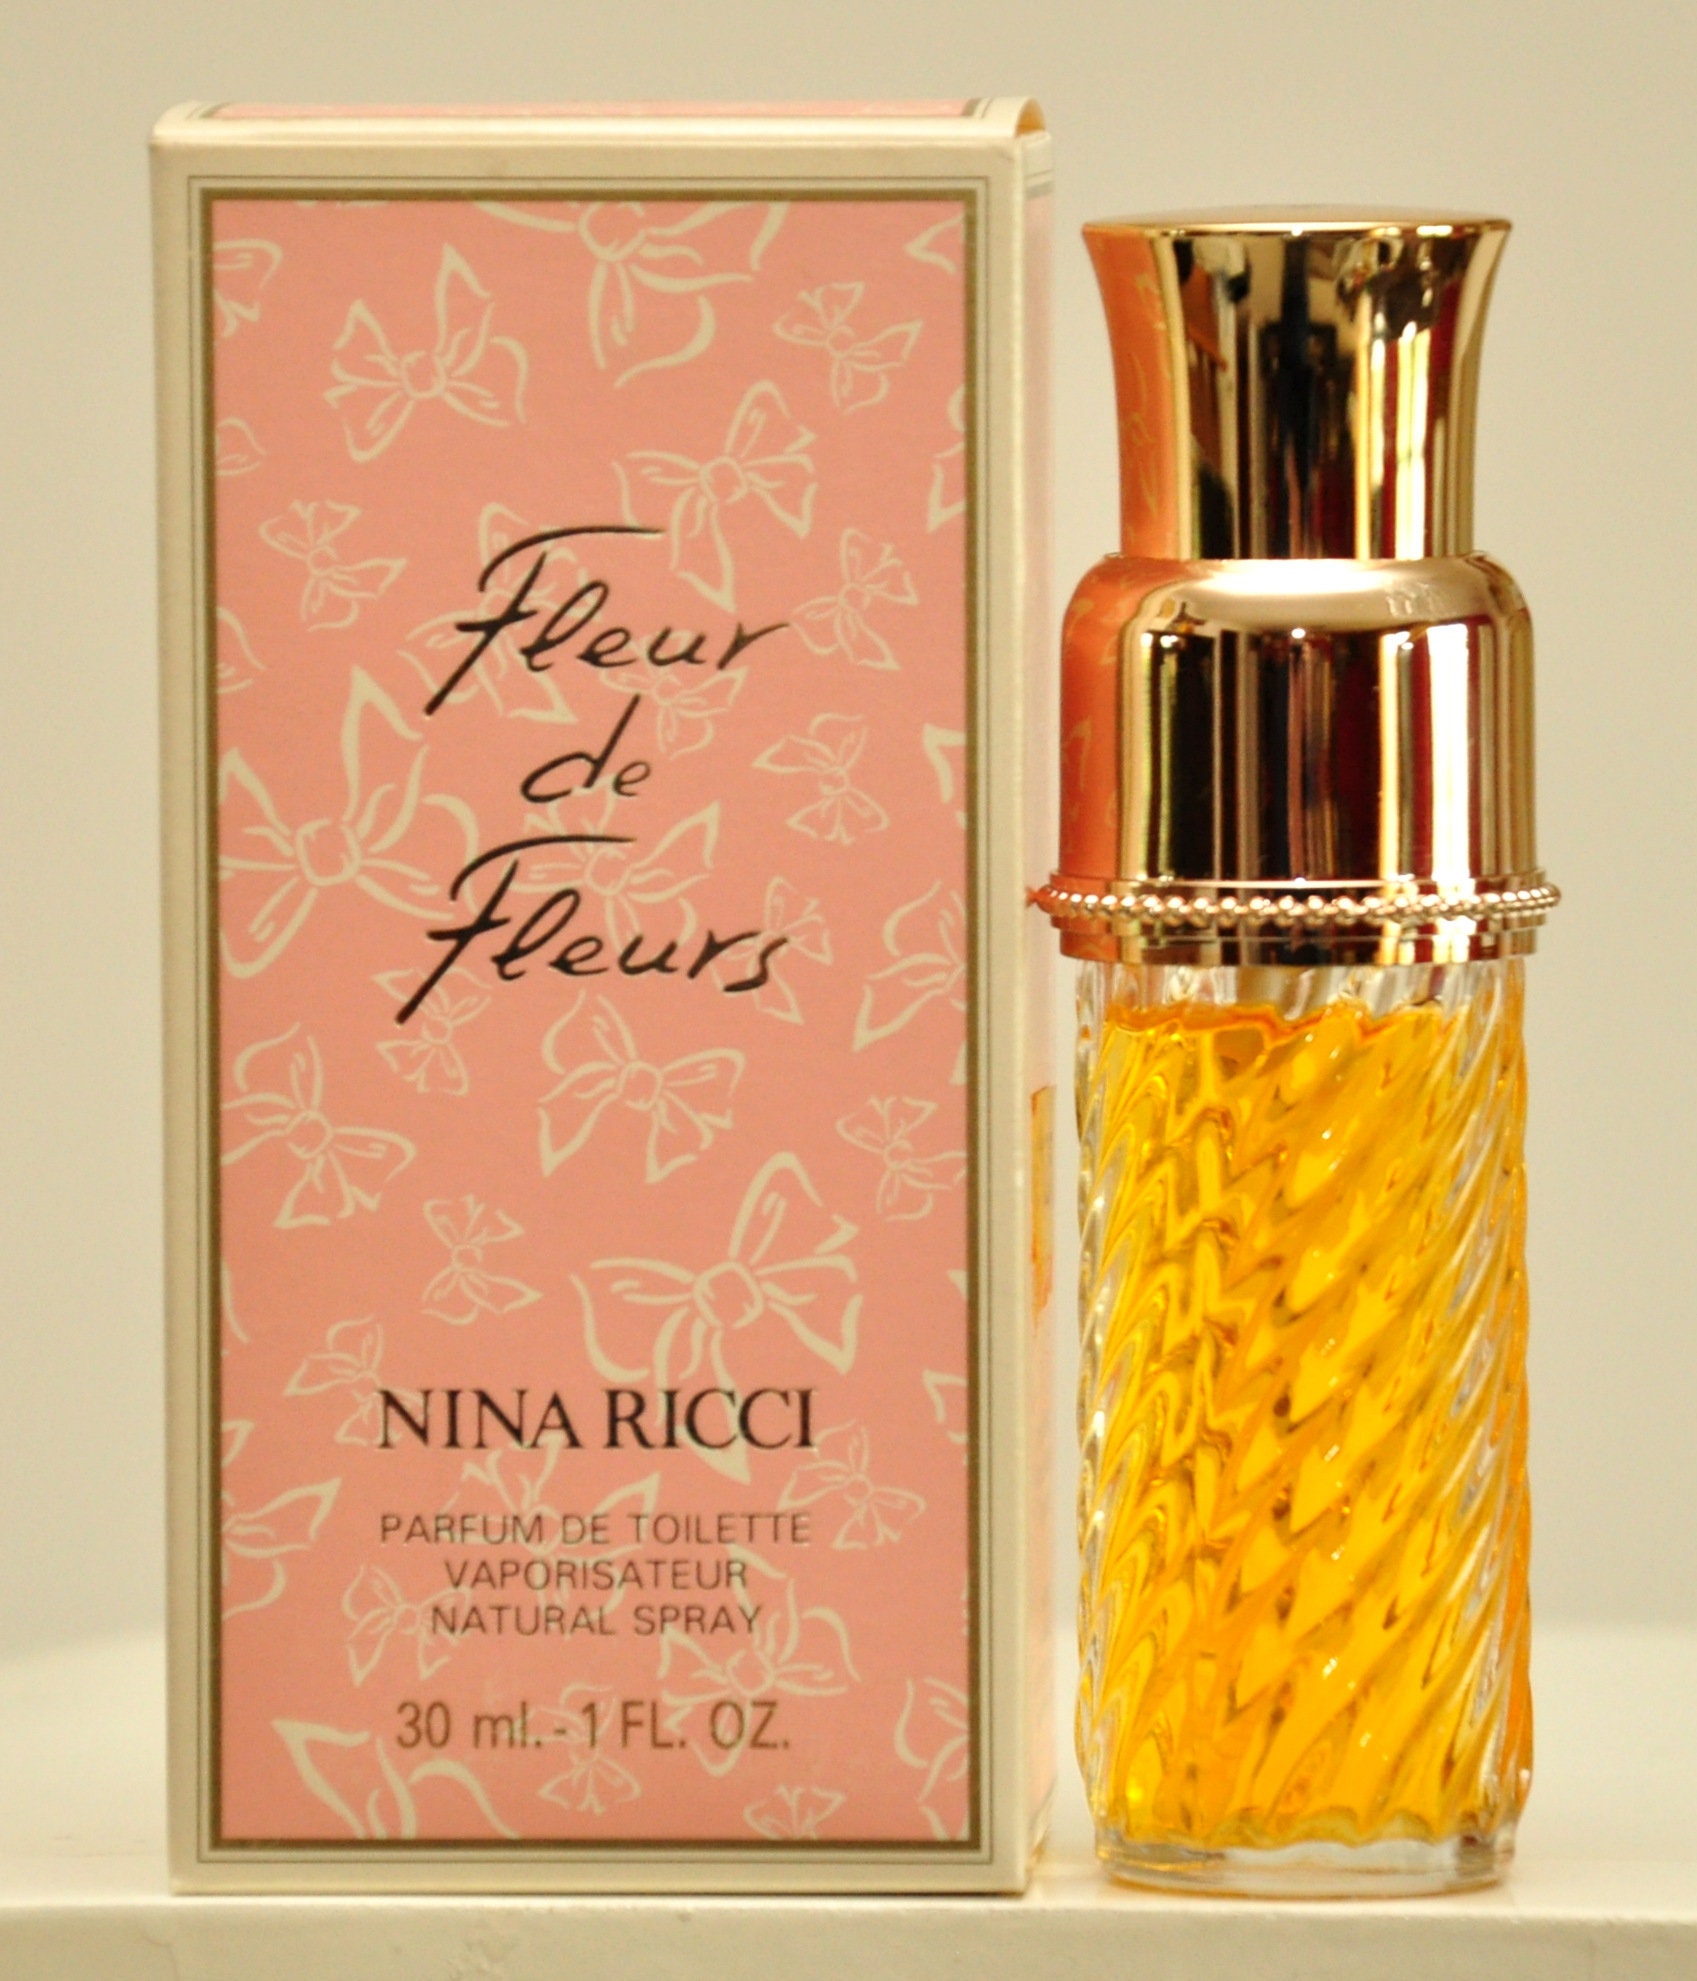 Nina Ricci Fleur De Fleurs Parfum De Toilette 30ml 1 Fl. Oz. - Etsy